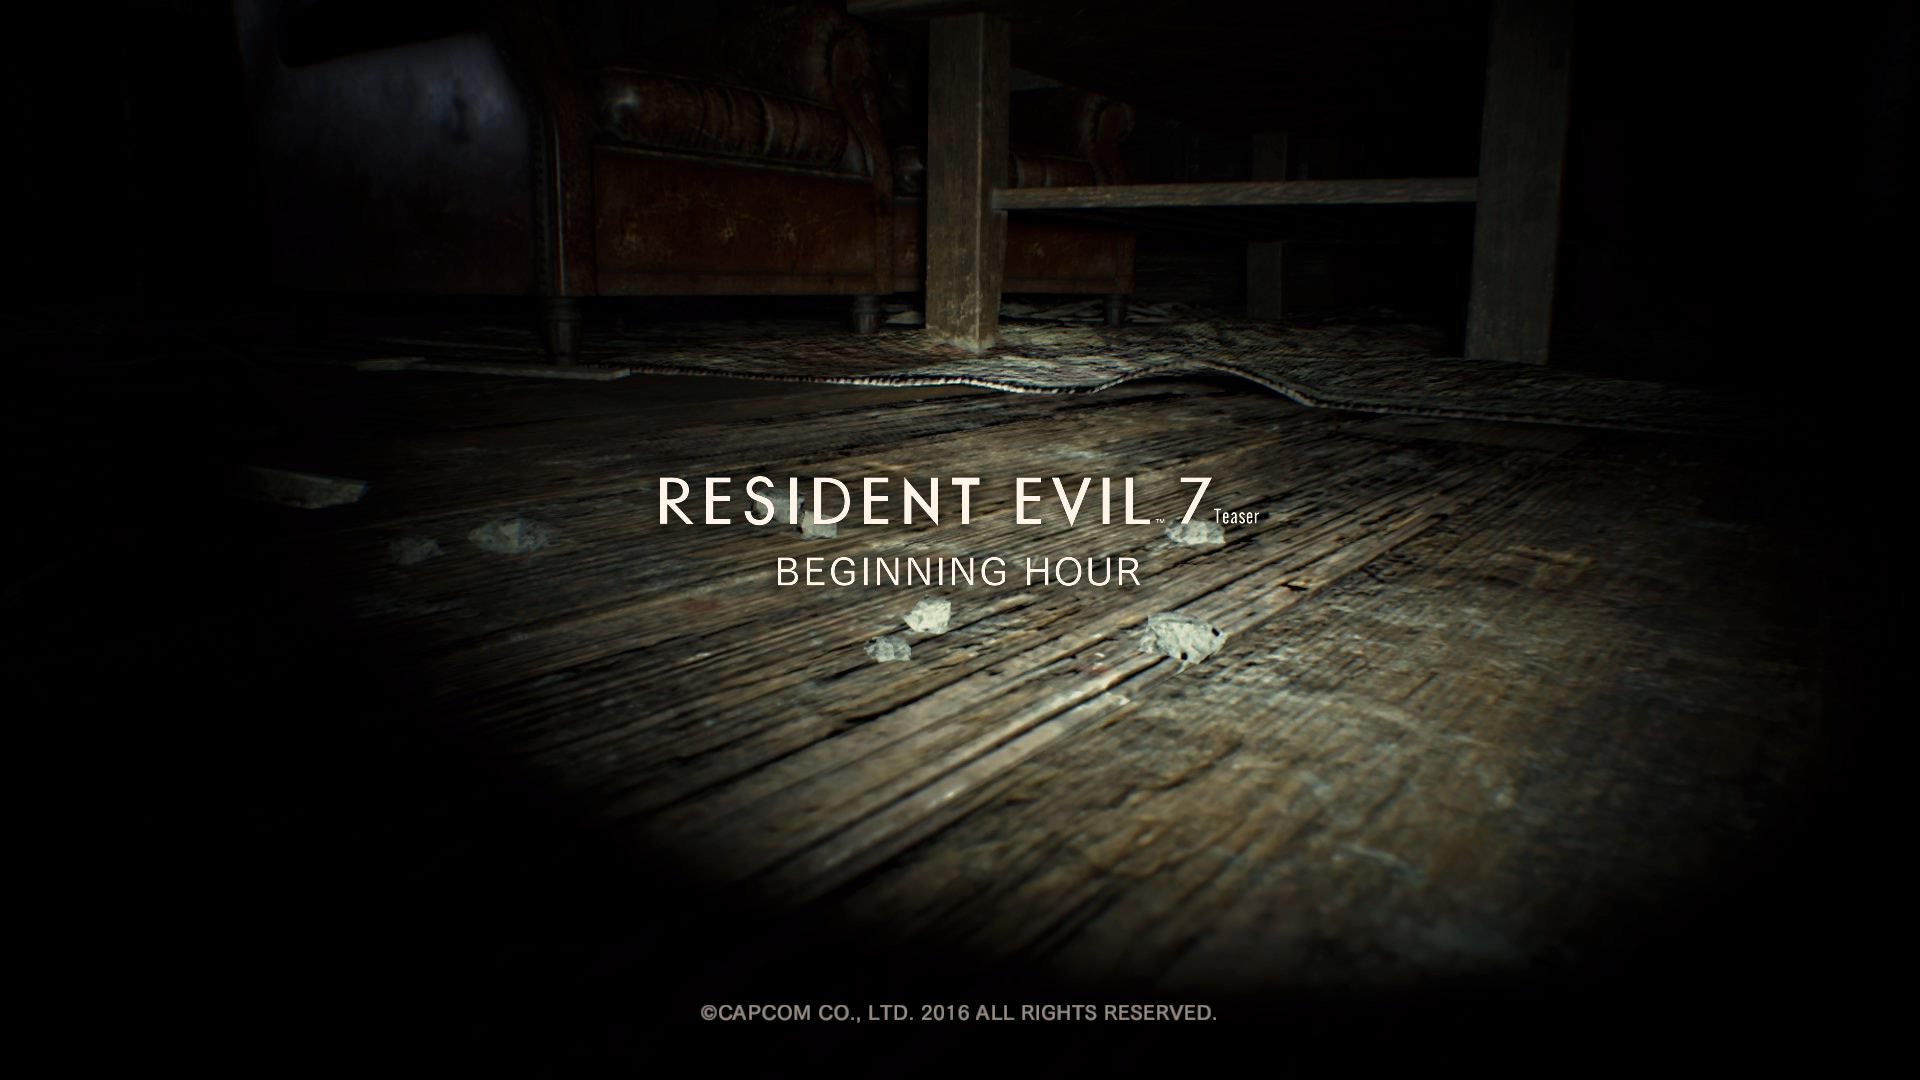 Resident-Evil-7-Teaser_-Beginning-Hour_2